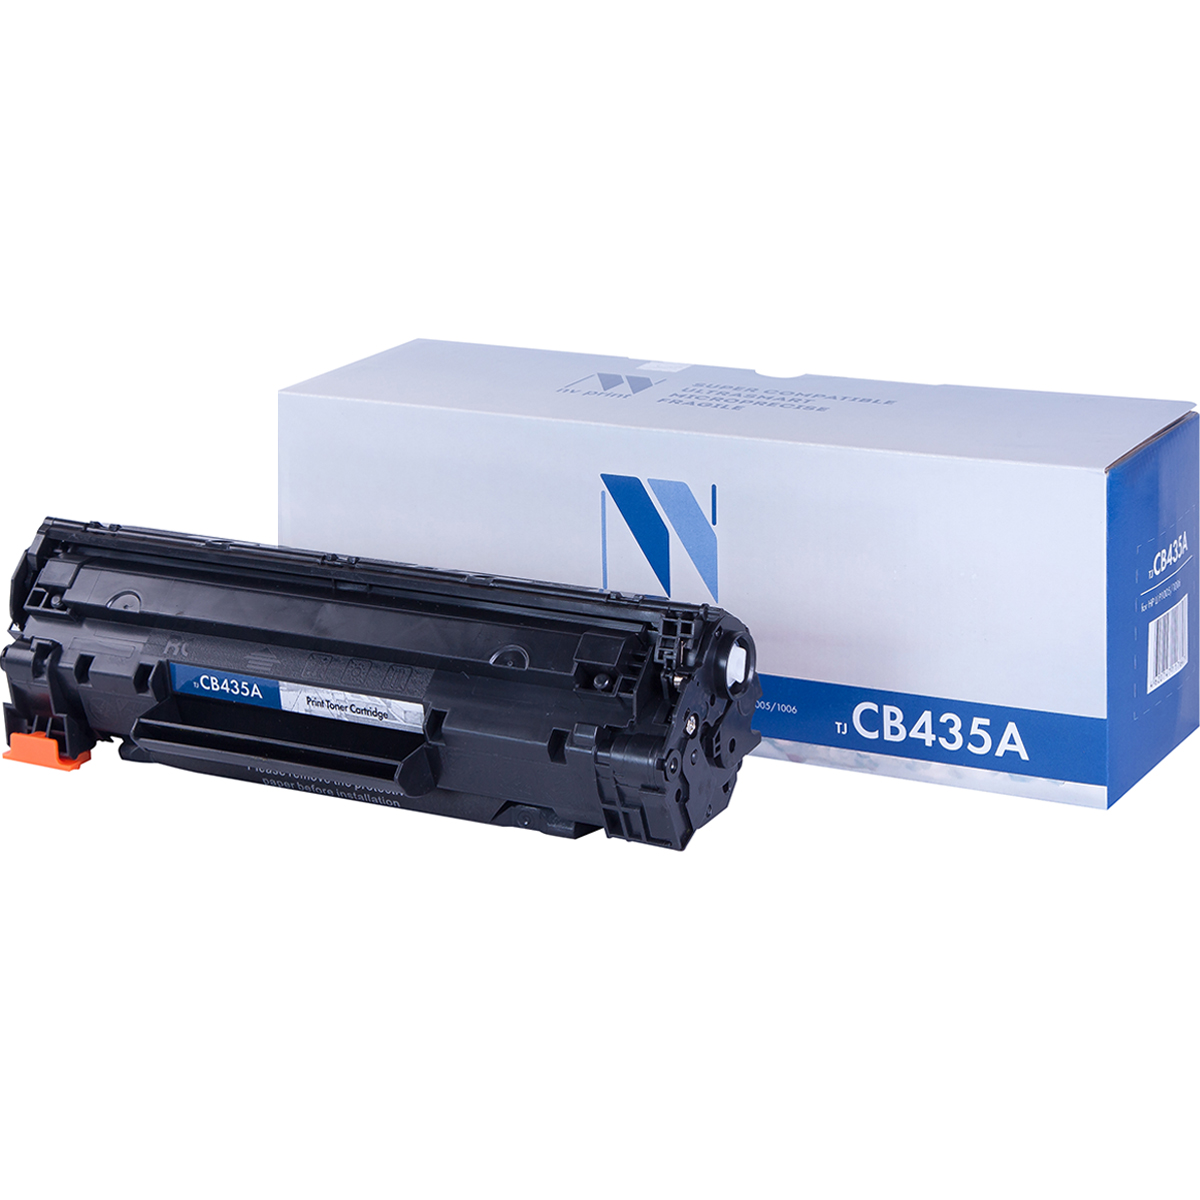 Картридж NV Print CB435A для Нewlett-Packard LJ P1005/1006 (1500k) картридж nv print cb435a для hp laserjet p1005 p1006 1500k черный